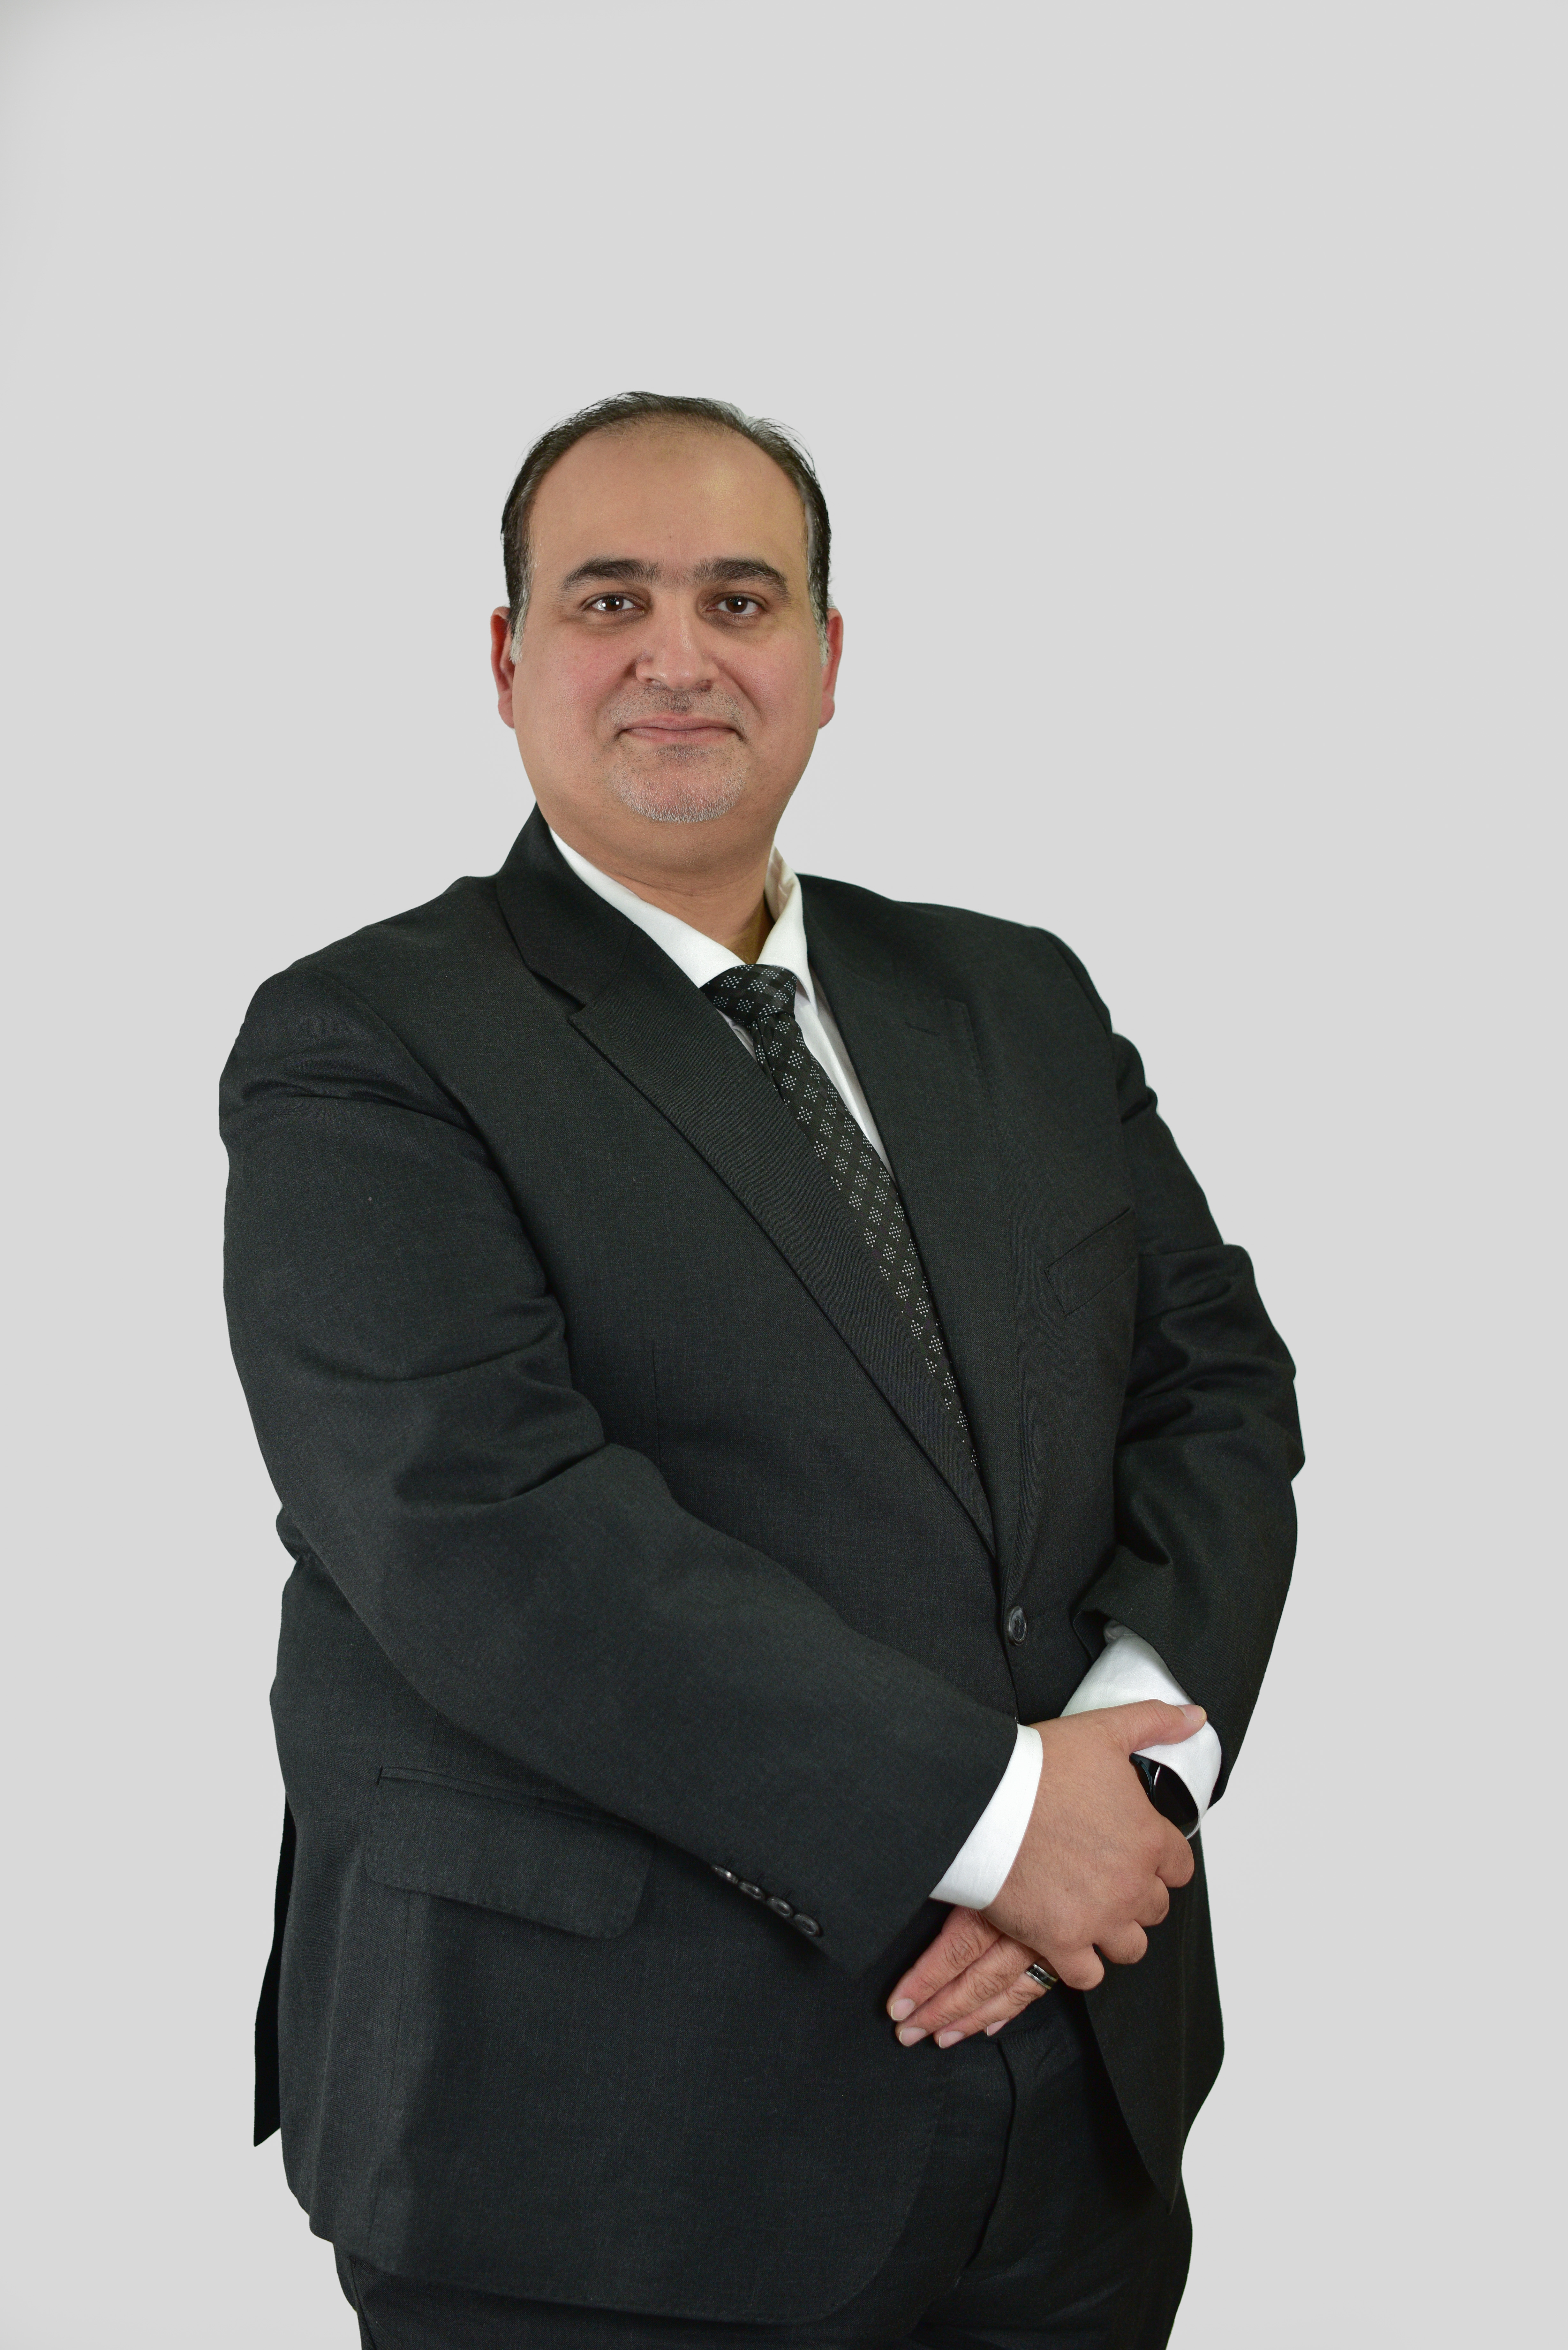 السيد "محمد نور" محمود الجبعي